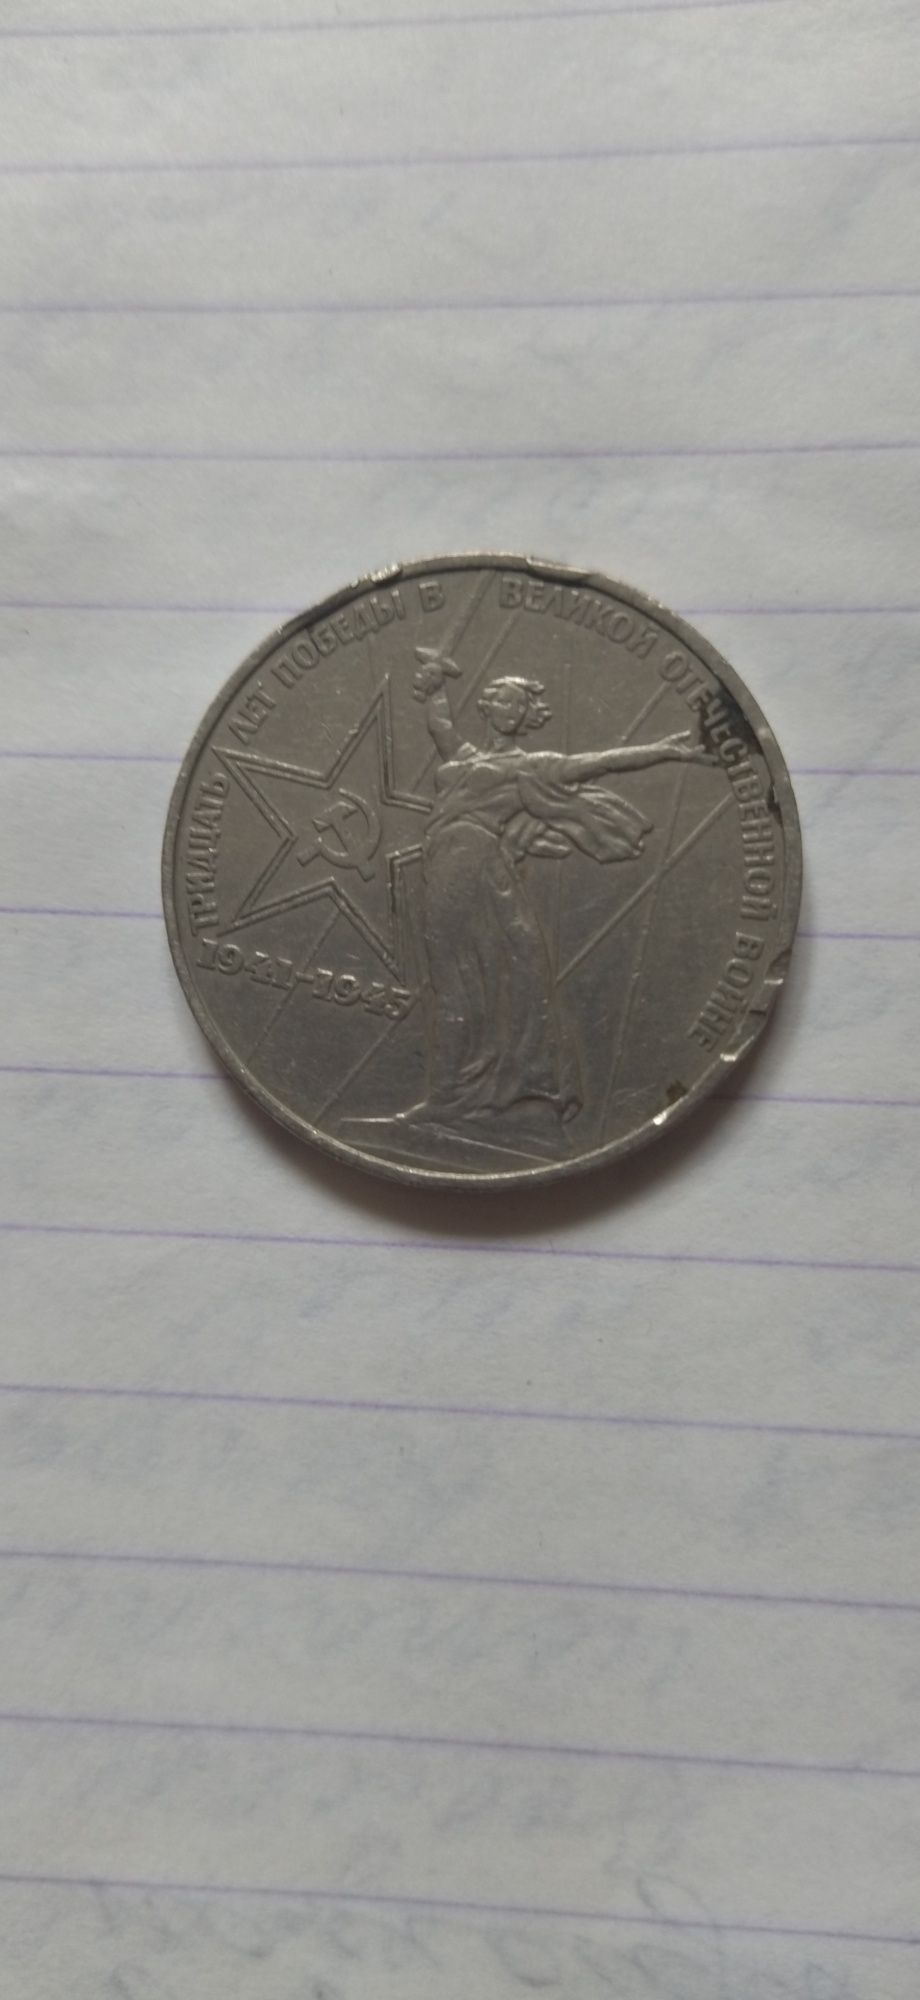 Продаётся монета номиналом один рубль  советского образца.